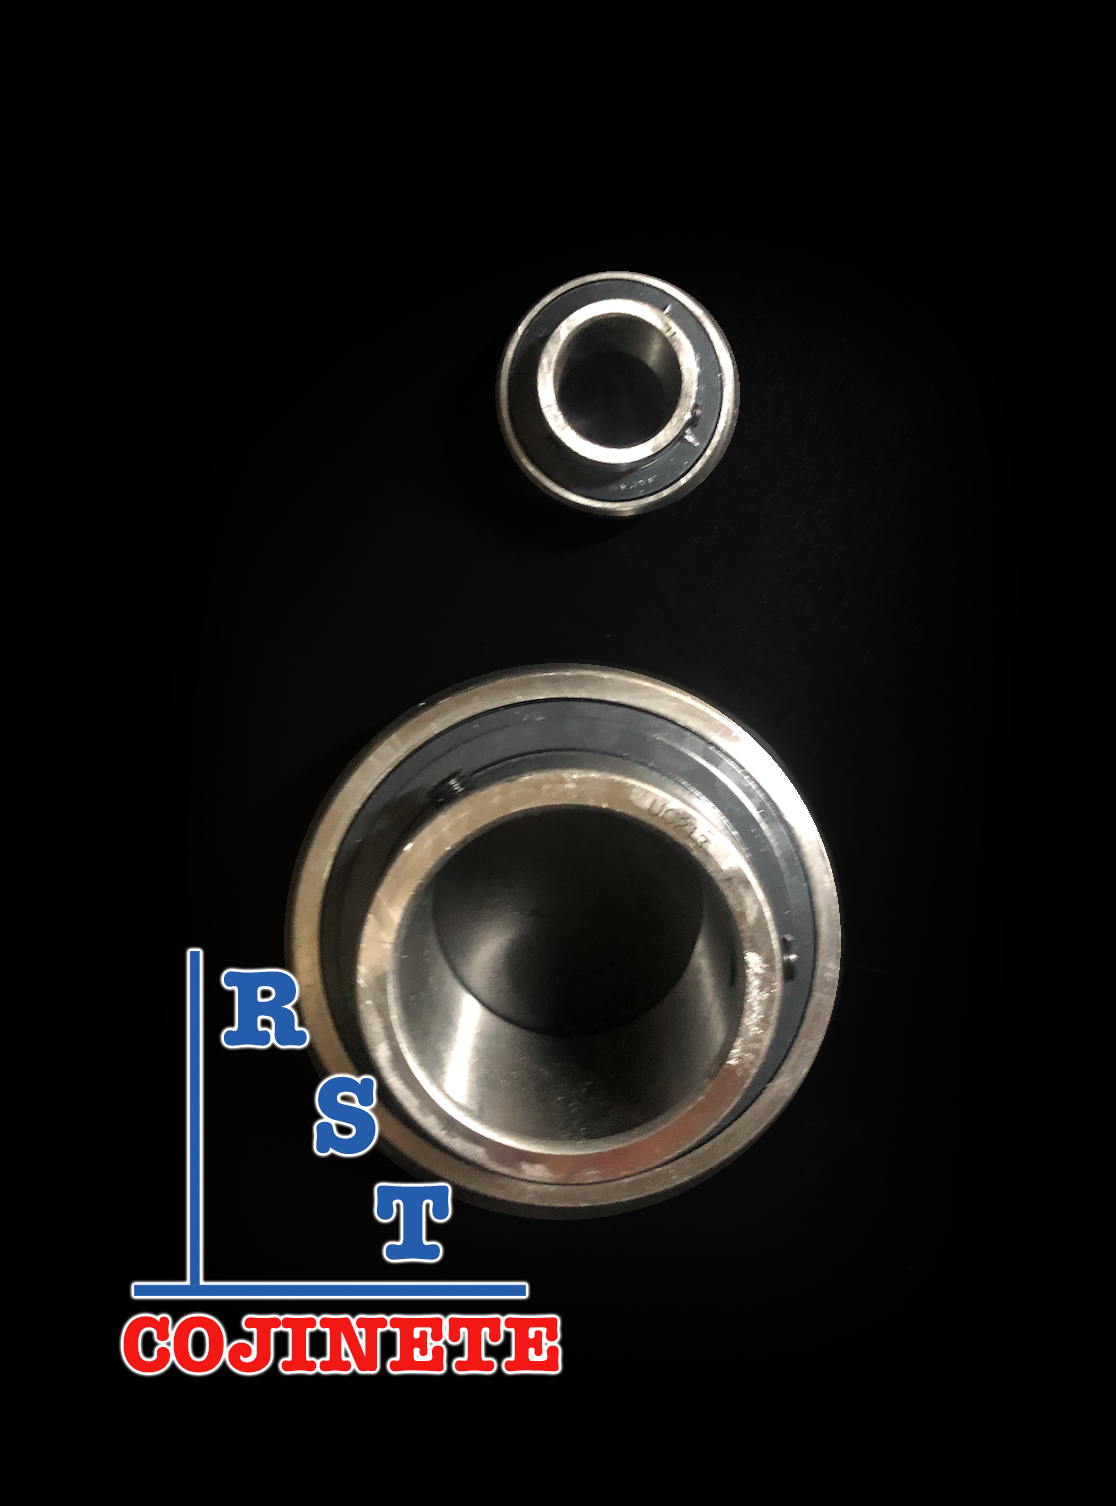 Cojinete insertable UC210-31 | Rodamiento para eje de 1-15/16" rígido de bolas con sello de hule para chumacera